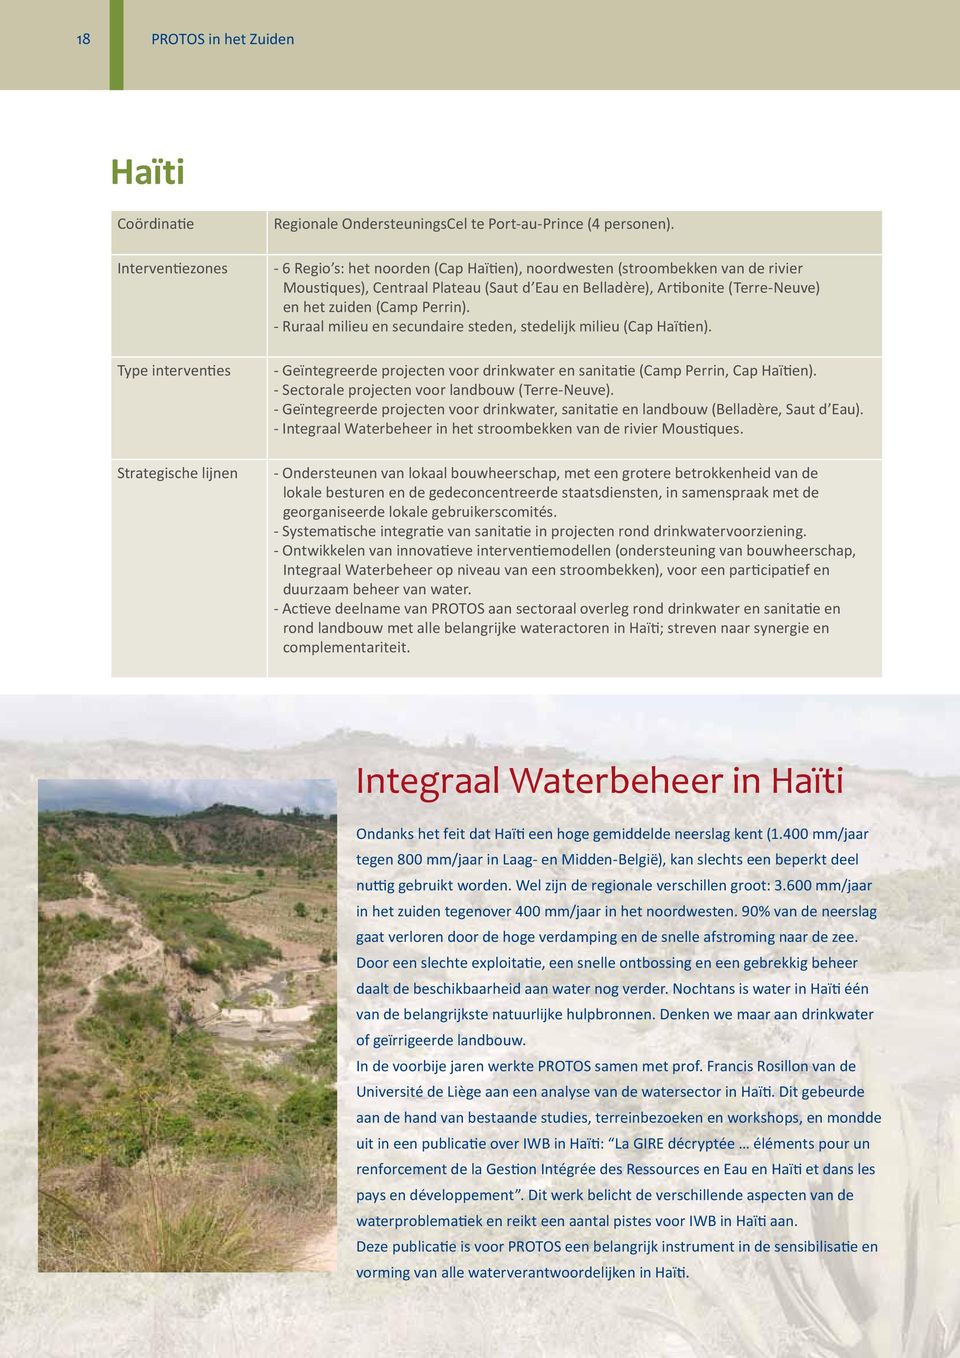 - Ruraal milieu en secundaire steden, stedelijk milieu (Cap Haïtien). - Geïntegreerde projecten voor drinkwater en sanitatie (Camp Perrin, Cap Haïtien).